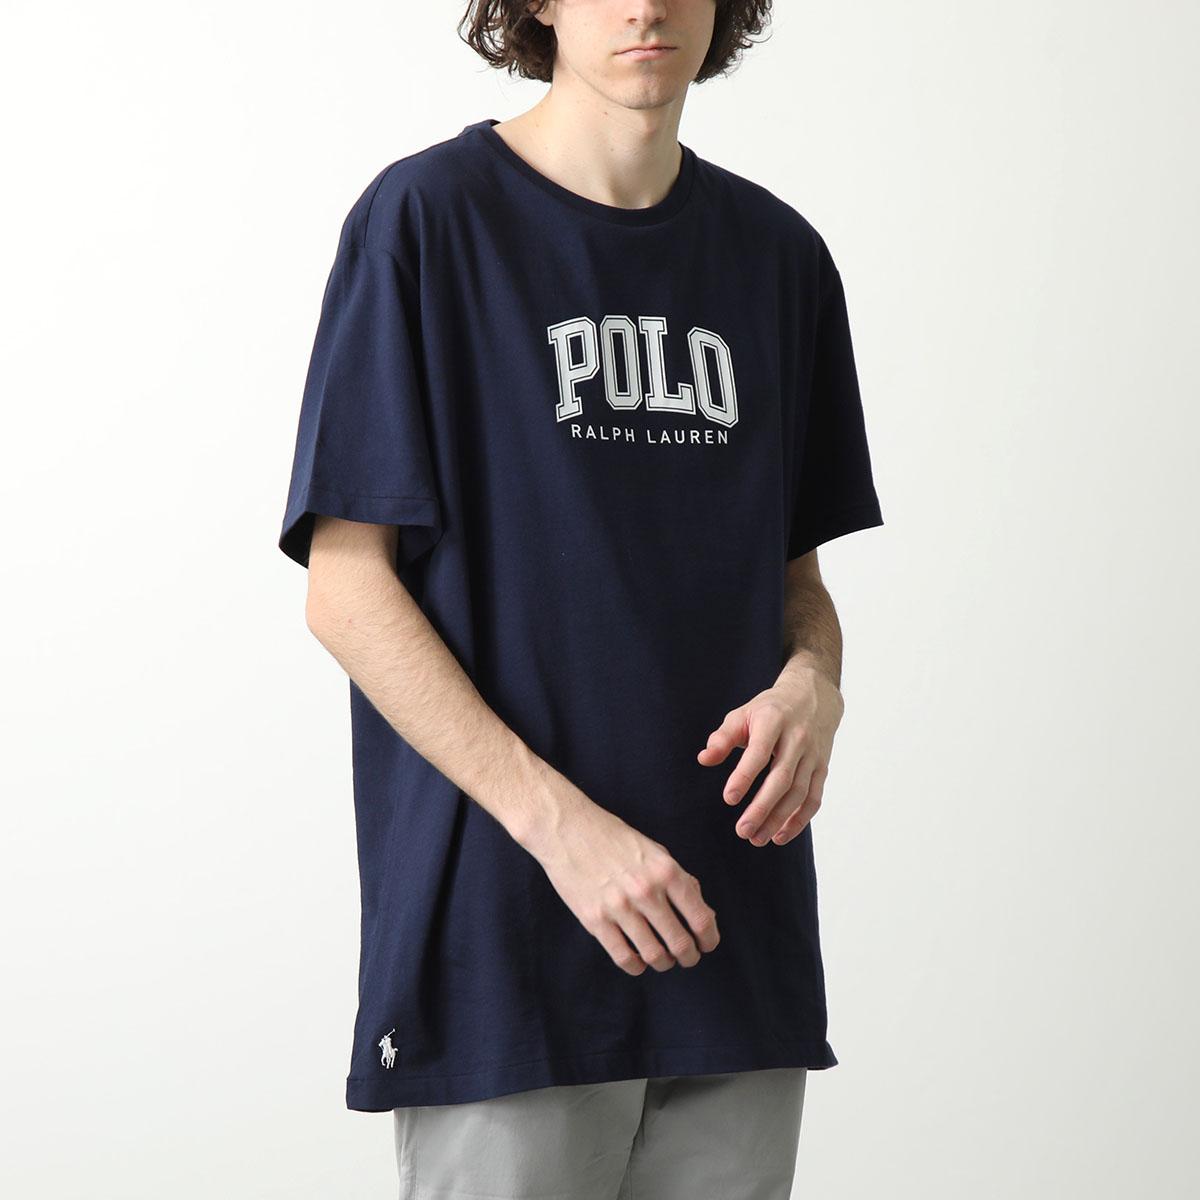 Polo Ralph Lauren ポロ ラルフローレン Tシャツ 710934714 メンズ ロゴ...